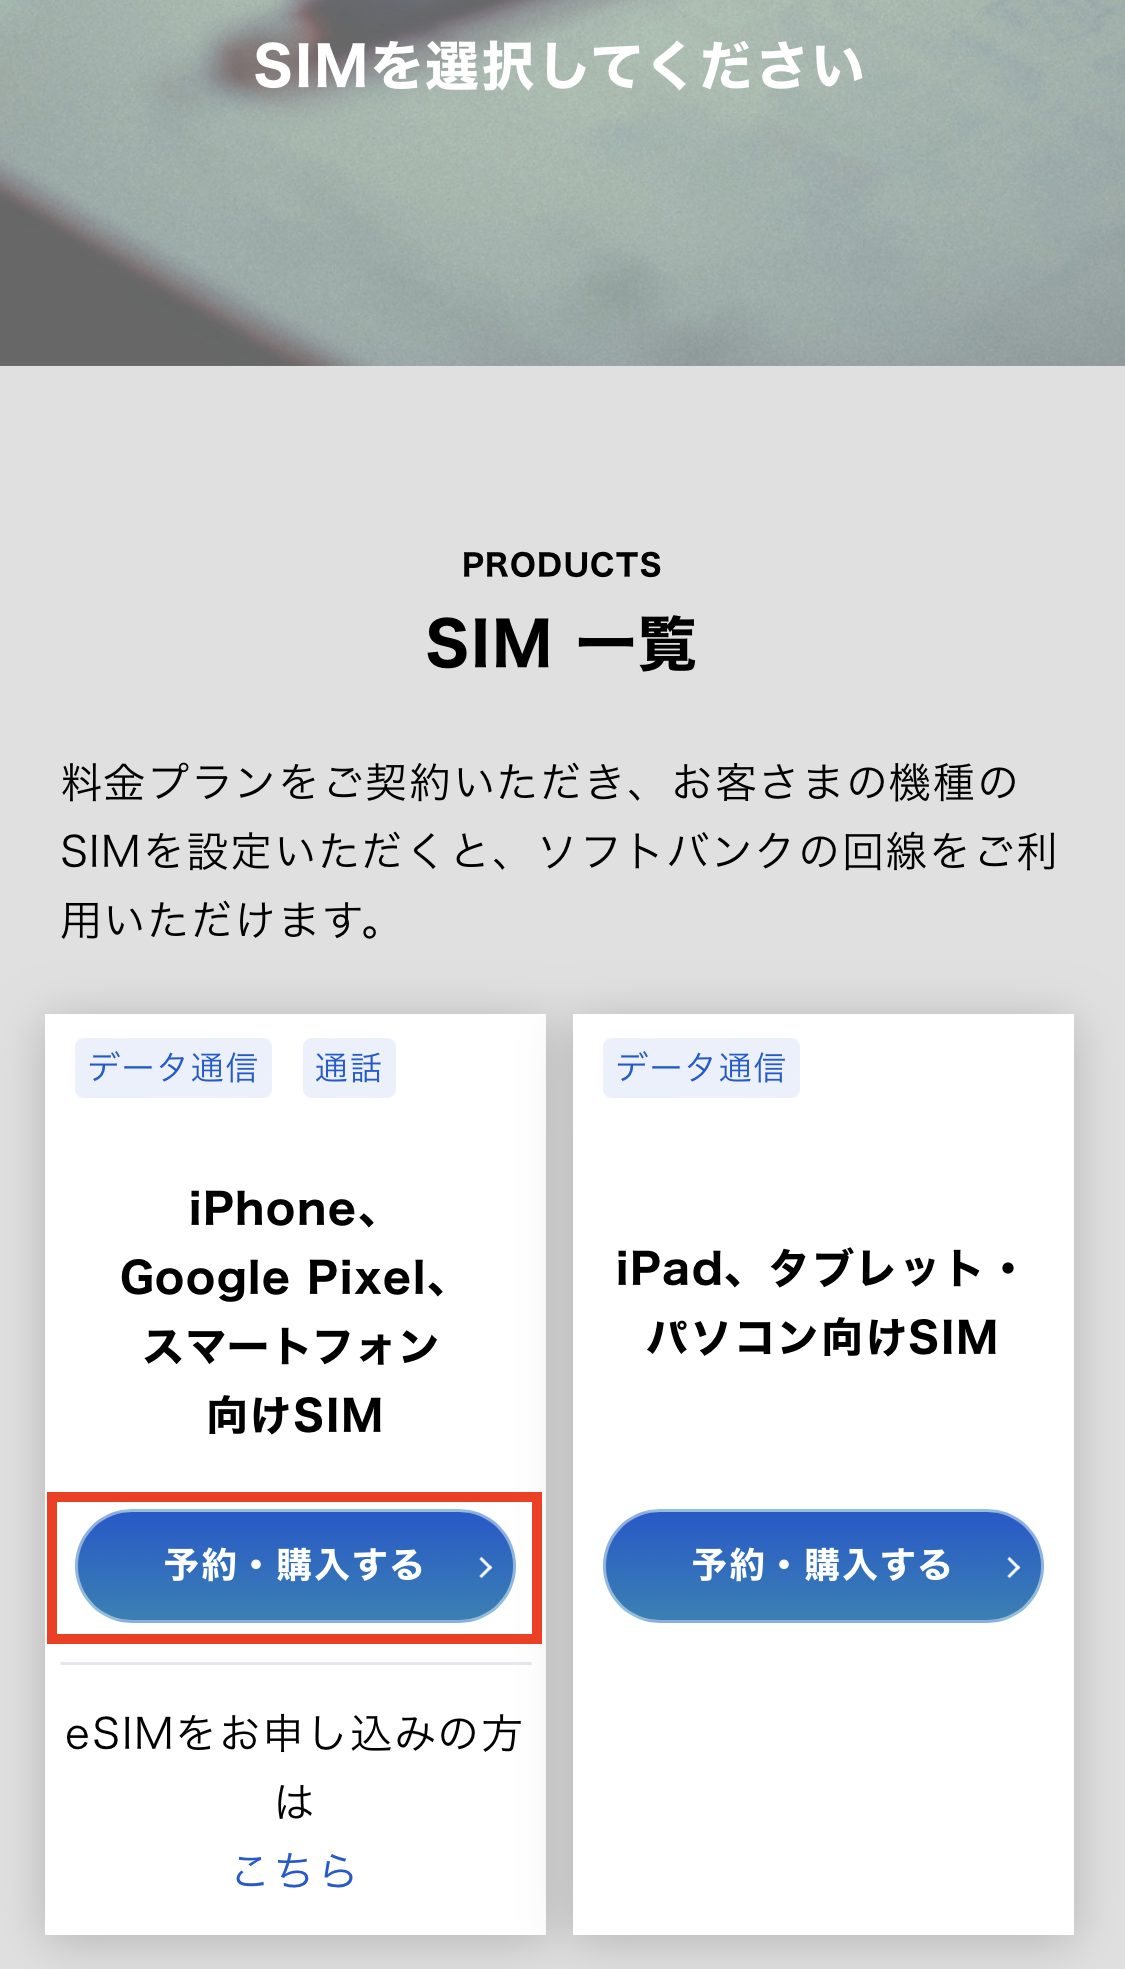 ソフトバンク SIM一覧